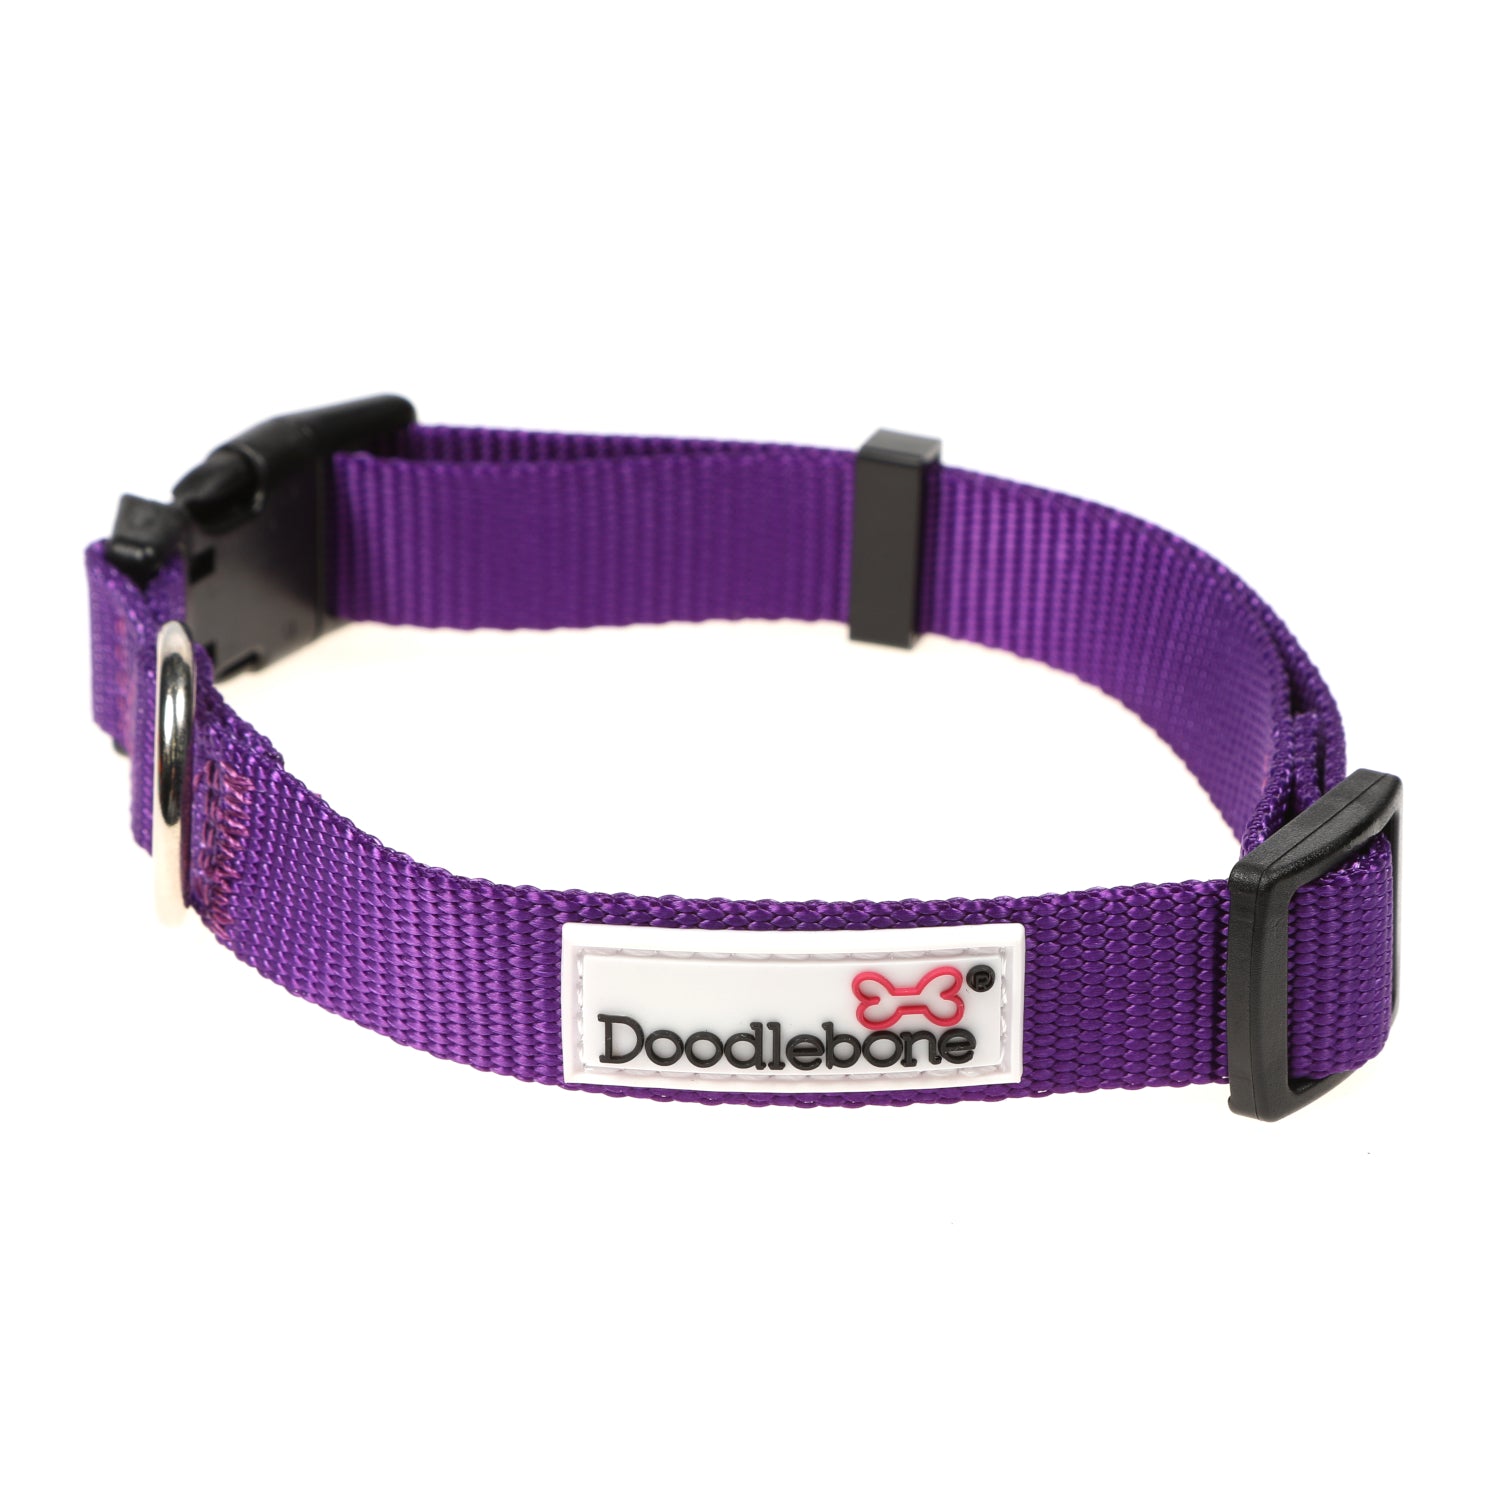 Doodlebone Originals Dog Collar Violet 3 Sizes